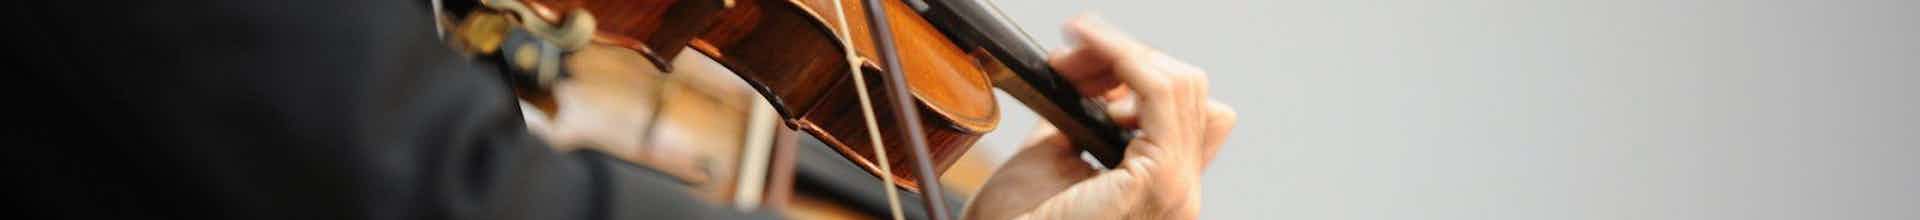 violist-close-up